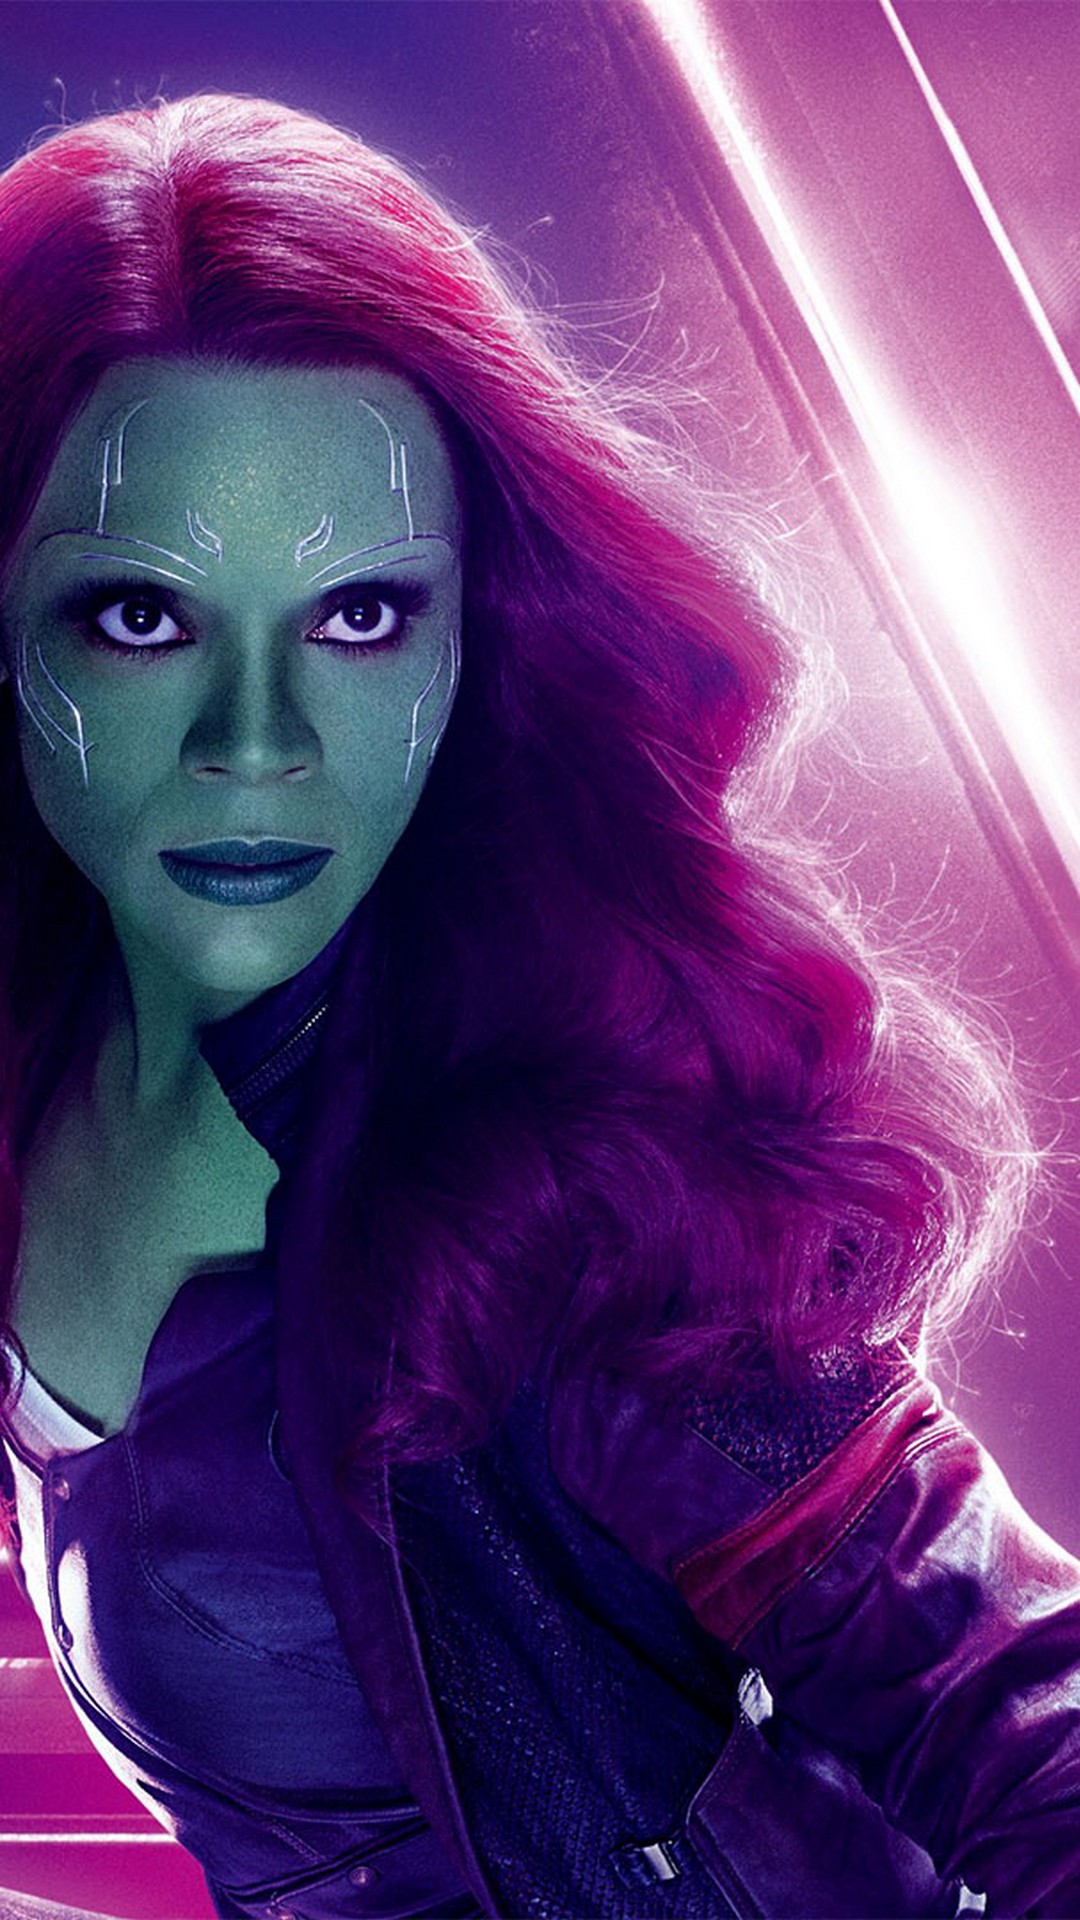 Gamora Avengers Endgame iPhone Wallpaper Movie Poster